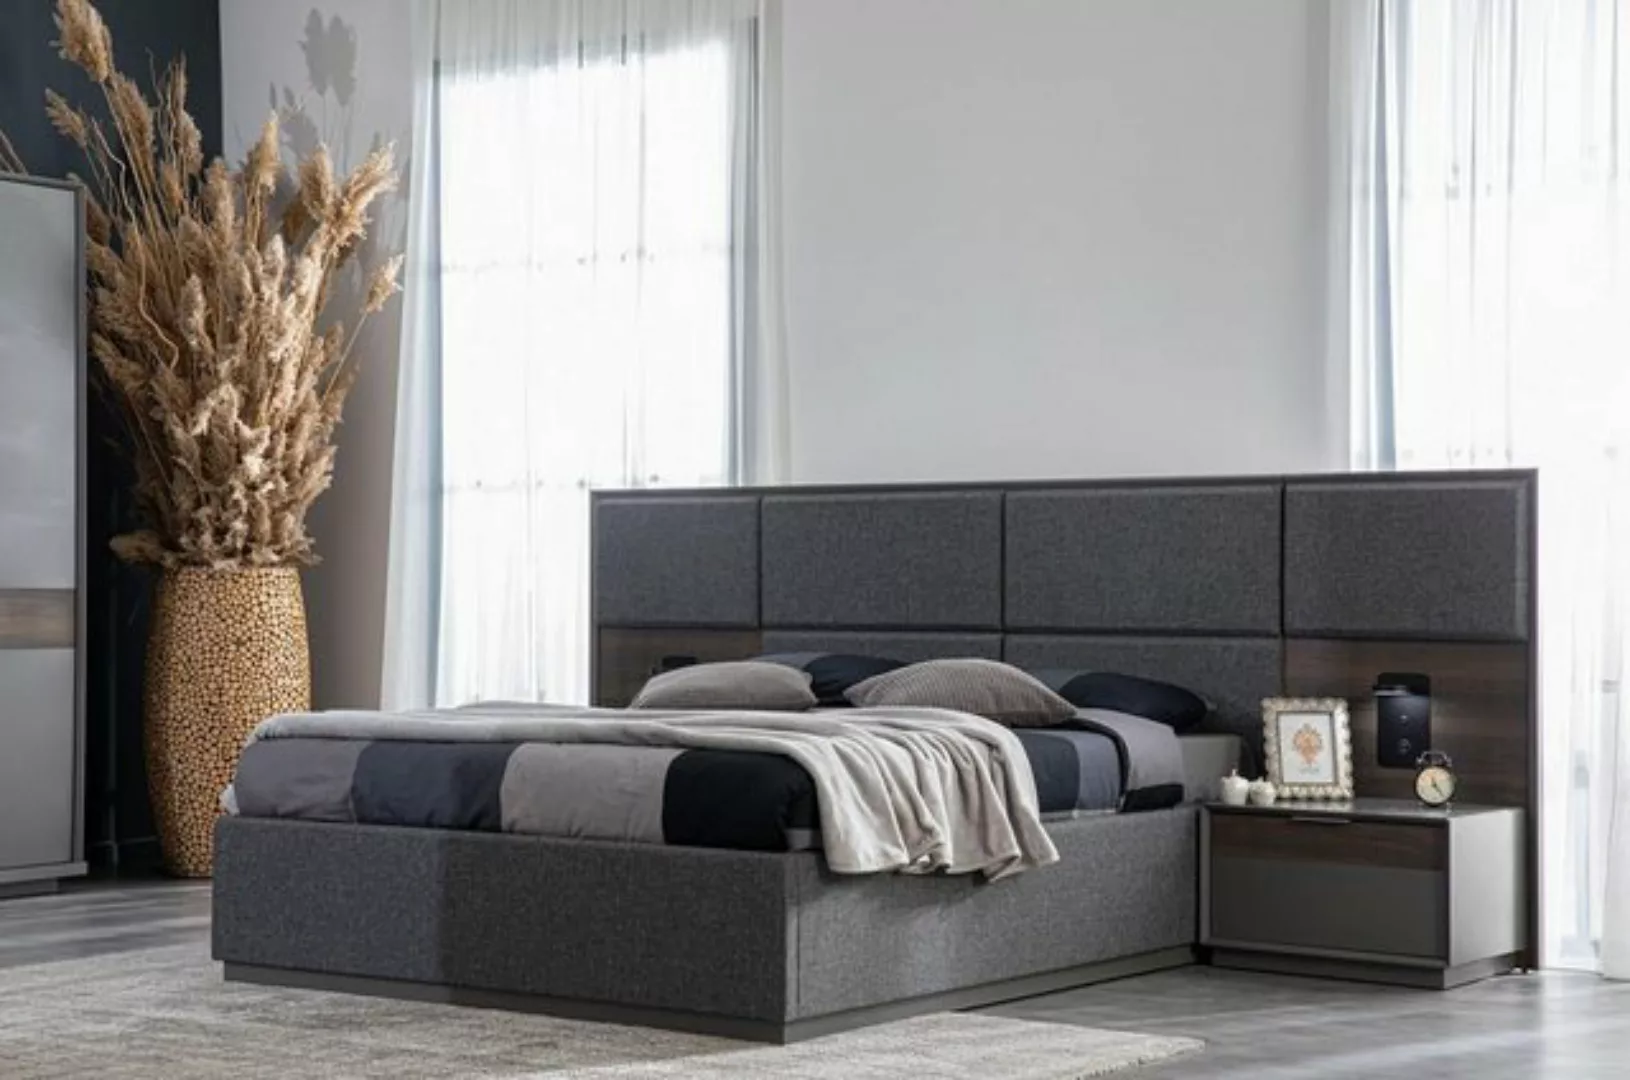 JVmoebel Bett Grau Bett Polster Design Luxus Doppel Betten Schlaf Zimmer (1 günstig online kaufen